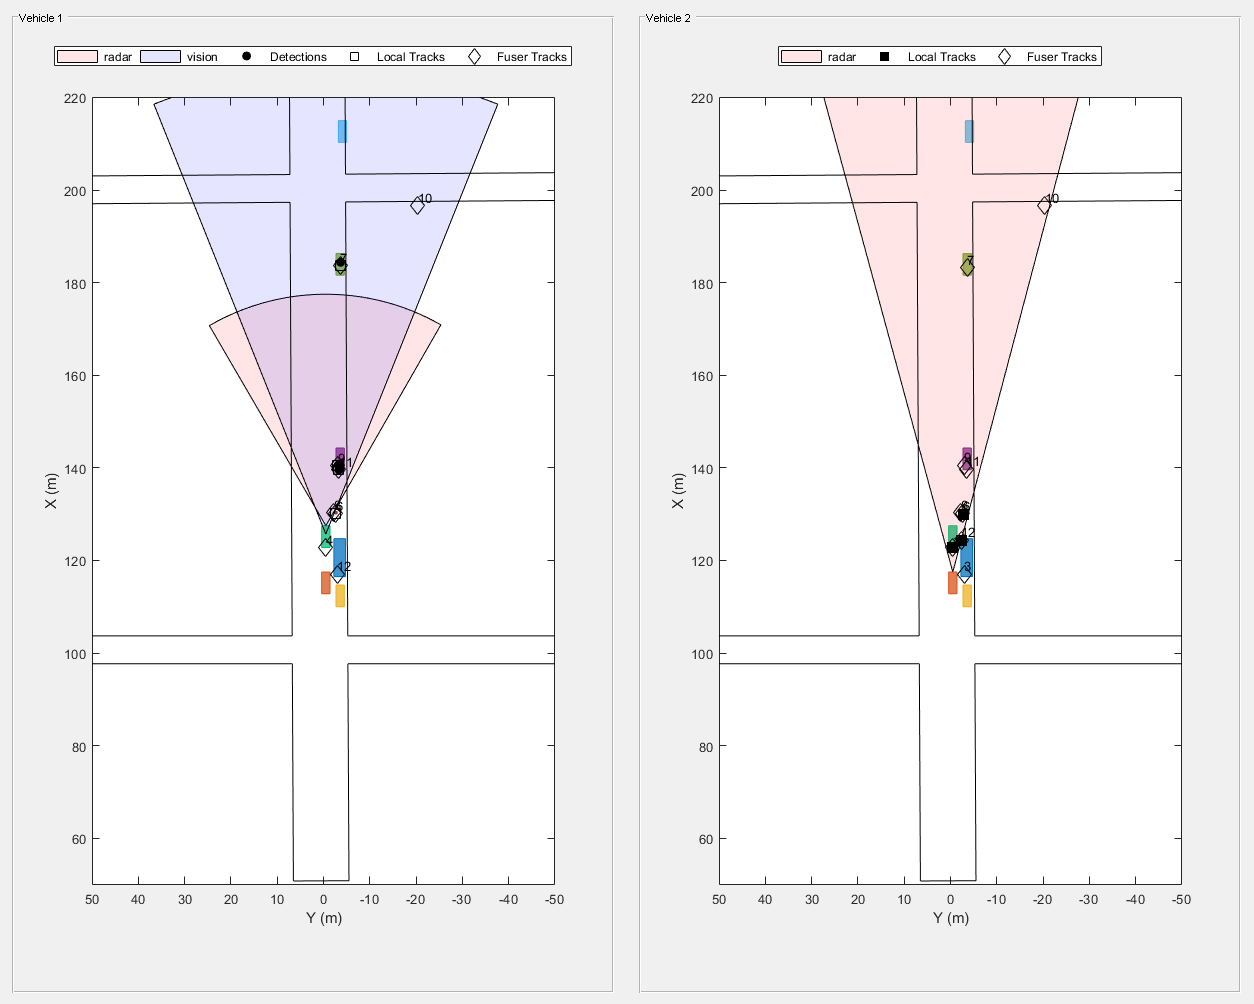 图拍# 3包含2轴uipanel类型的对象和其他对象。坐标轴对象1包含X (m), ylabel Y (m)包含13个对象类型的补丁,行文本。一个或多个行显示的值只使用这些对象标记代表雷达、视觉,检测,当地的追踪,熔化炉的踪迹。坐标轴对象2包含X (m), ylabel Y (m)包含12块类型的对象,线,文本。一个或多个行显示的值只使用这些对象标记代表雷达,当地的追踪,熔化炉的踪迹。